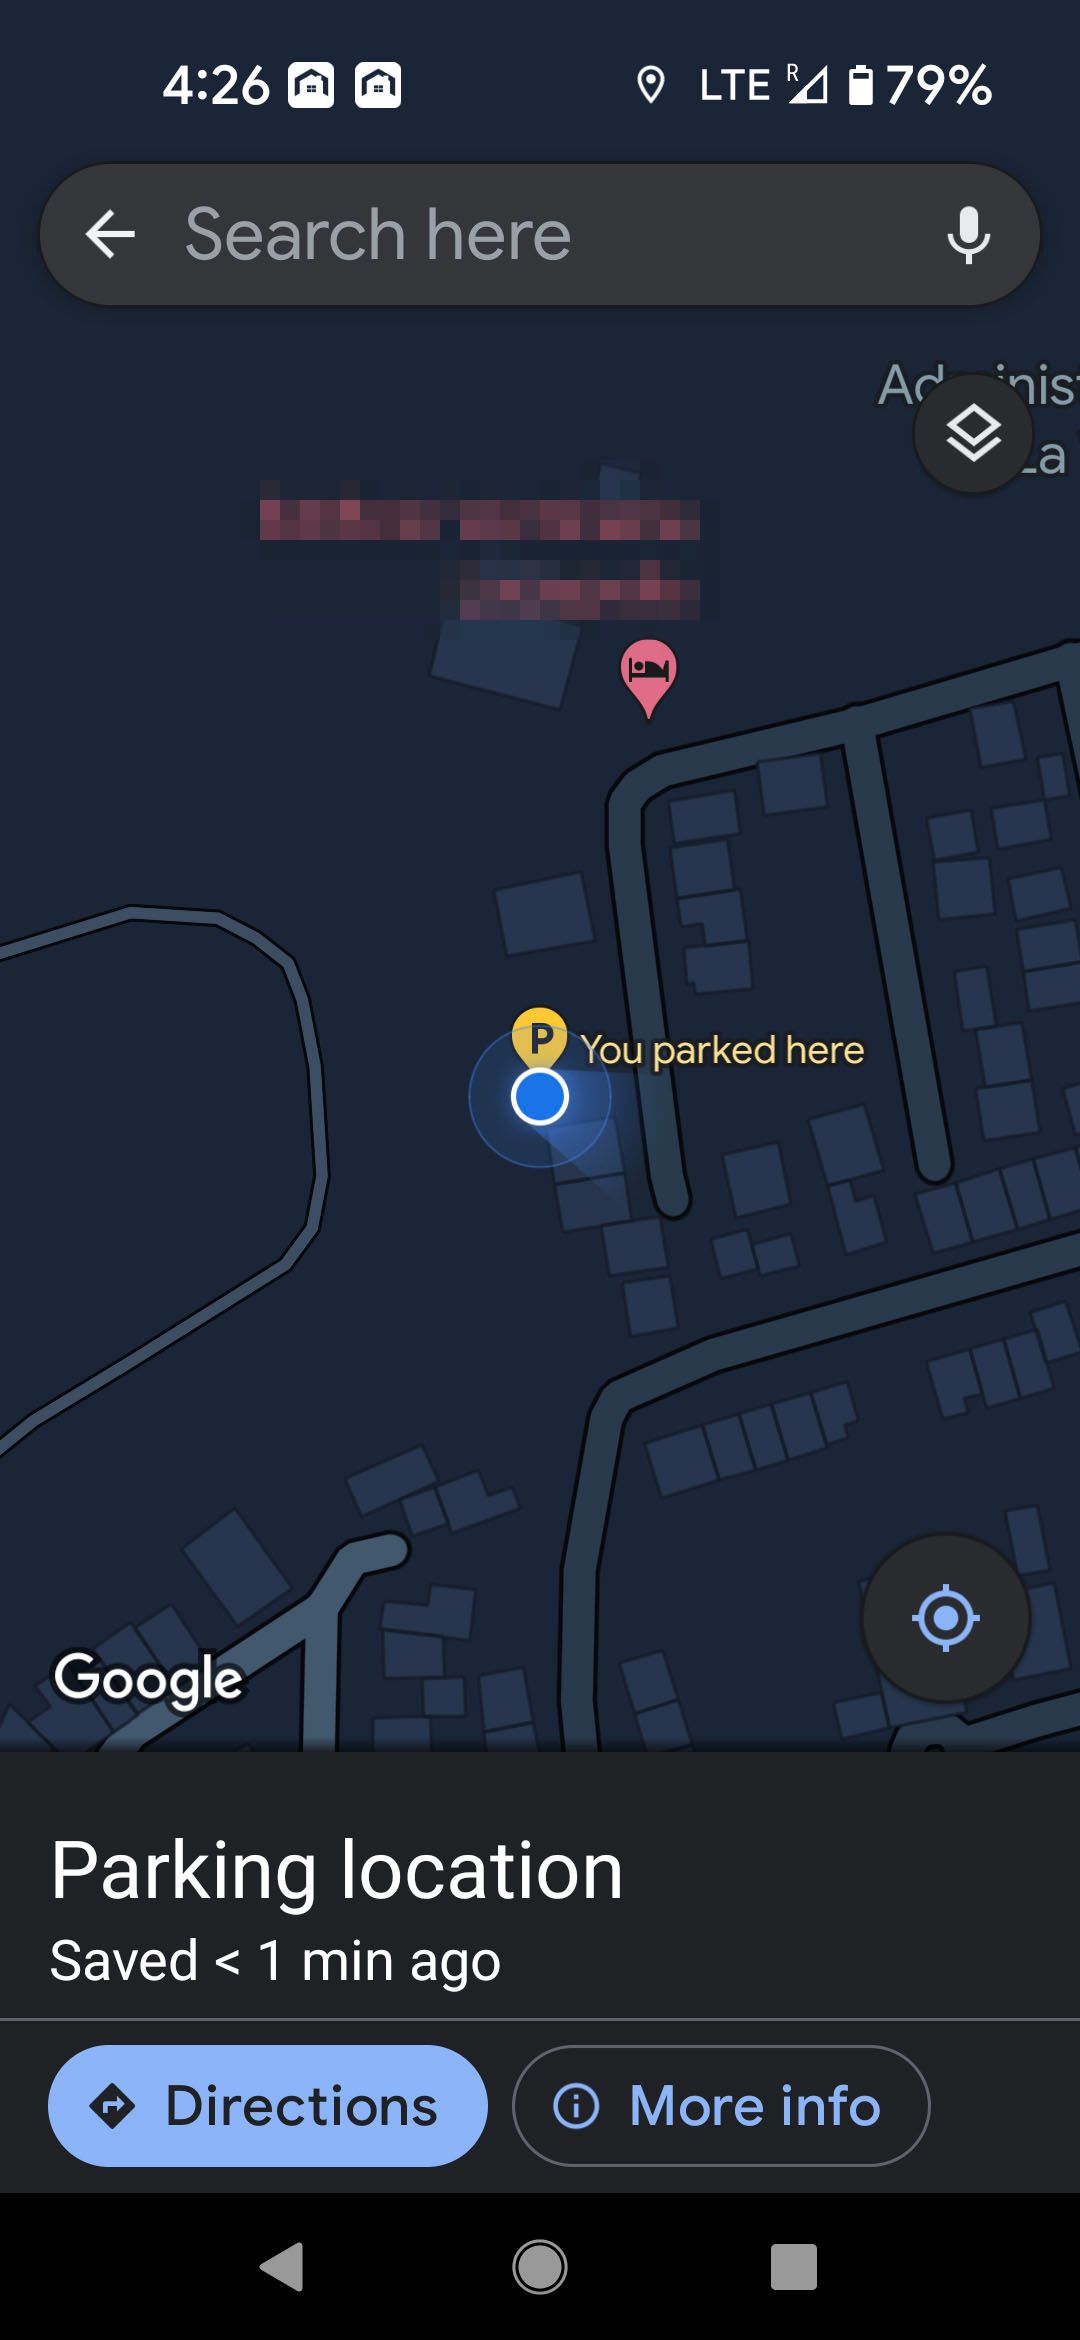 Vi um local de estacionamento salvo no Google Maps em um telefone Android